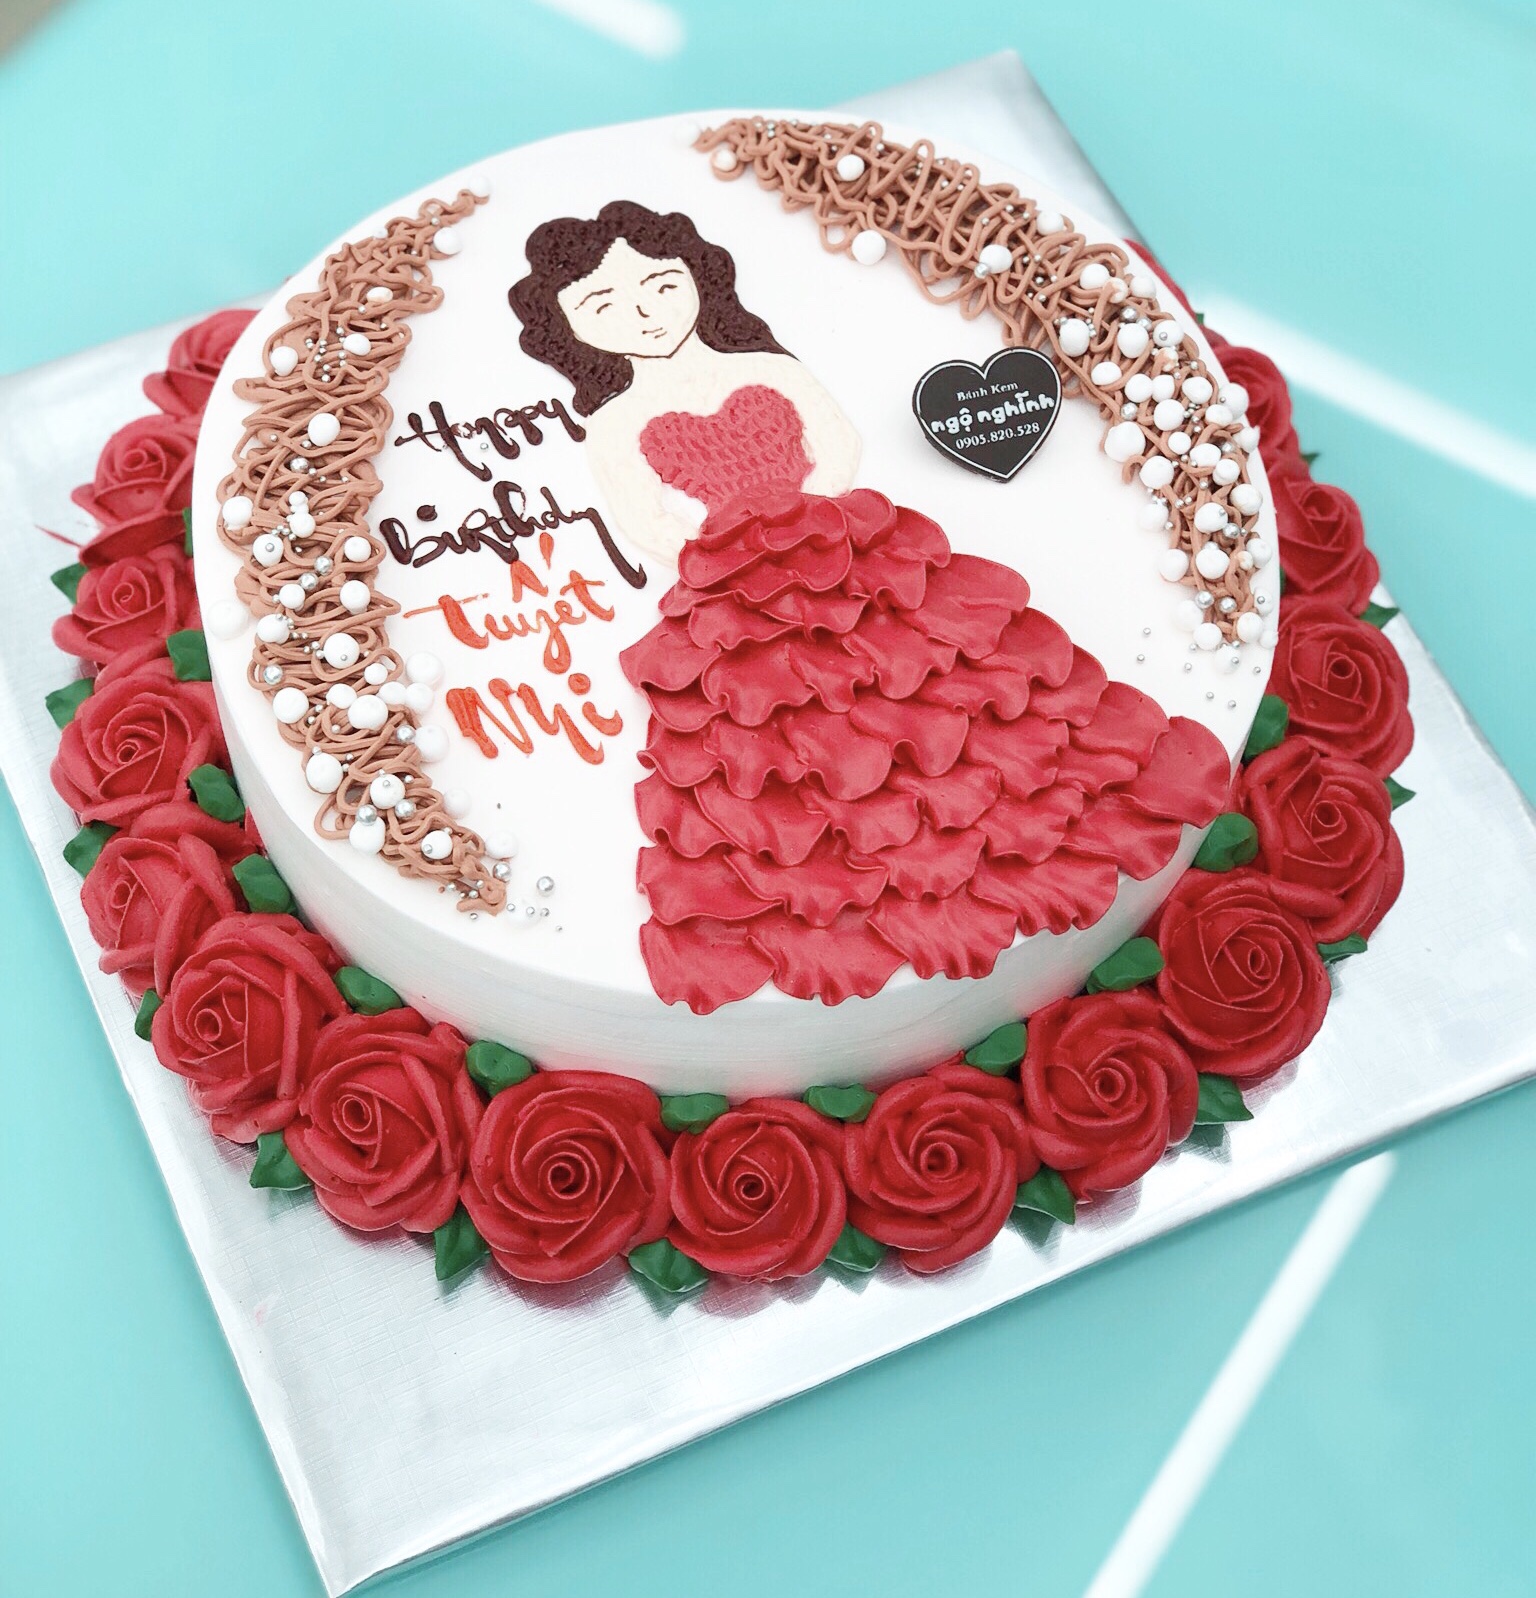 Bánh sinh nhật vẽ hình cô gái váy đỏ bắt hoa hồng đỏ đẹp rực rỡ ...